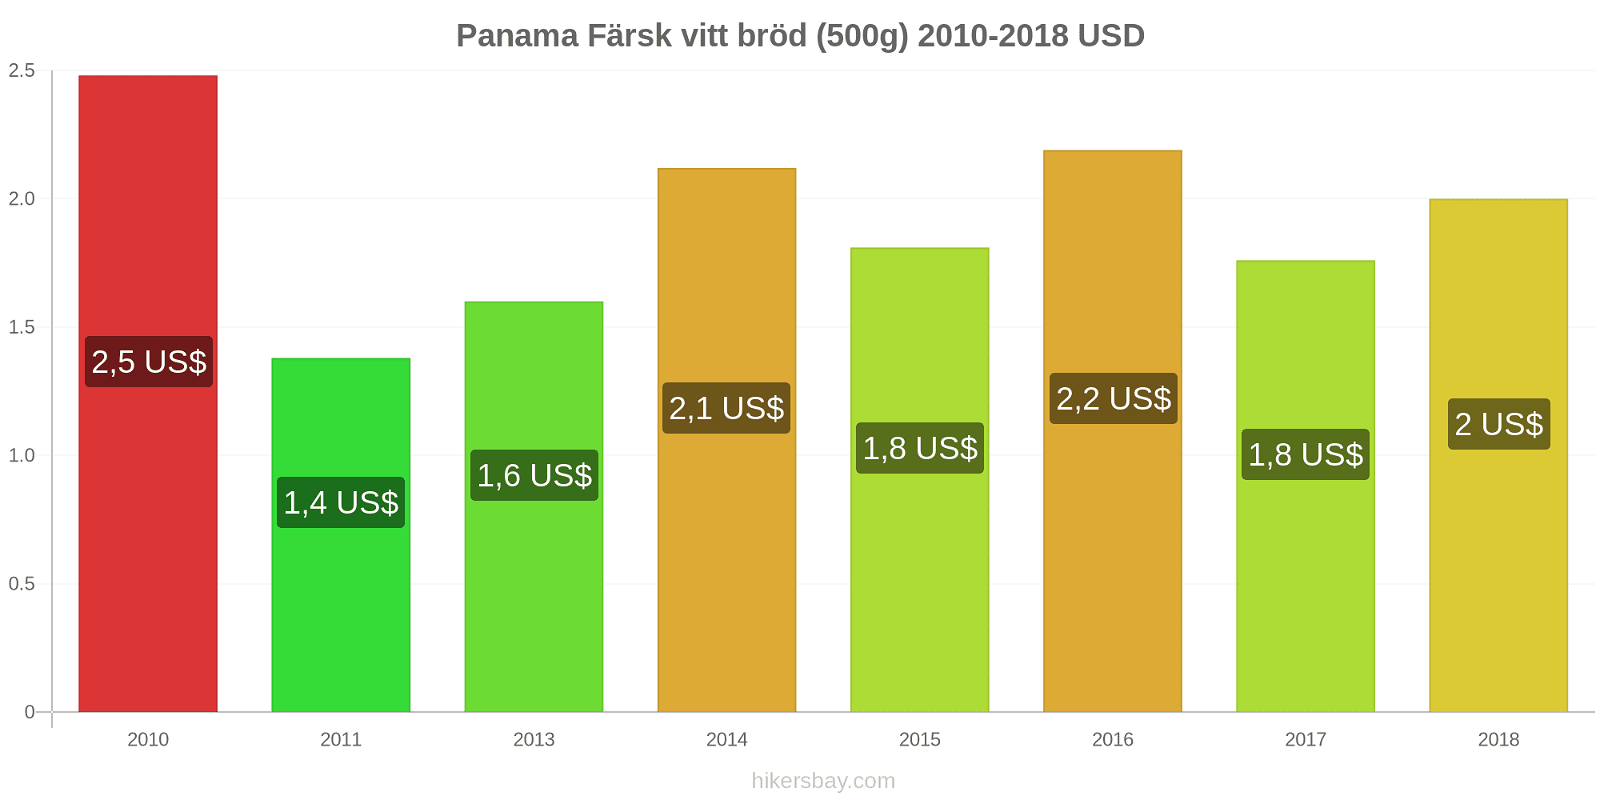 Panama prisändringar Färsk vitt bröd (500g) hikersbay.com